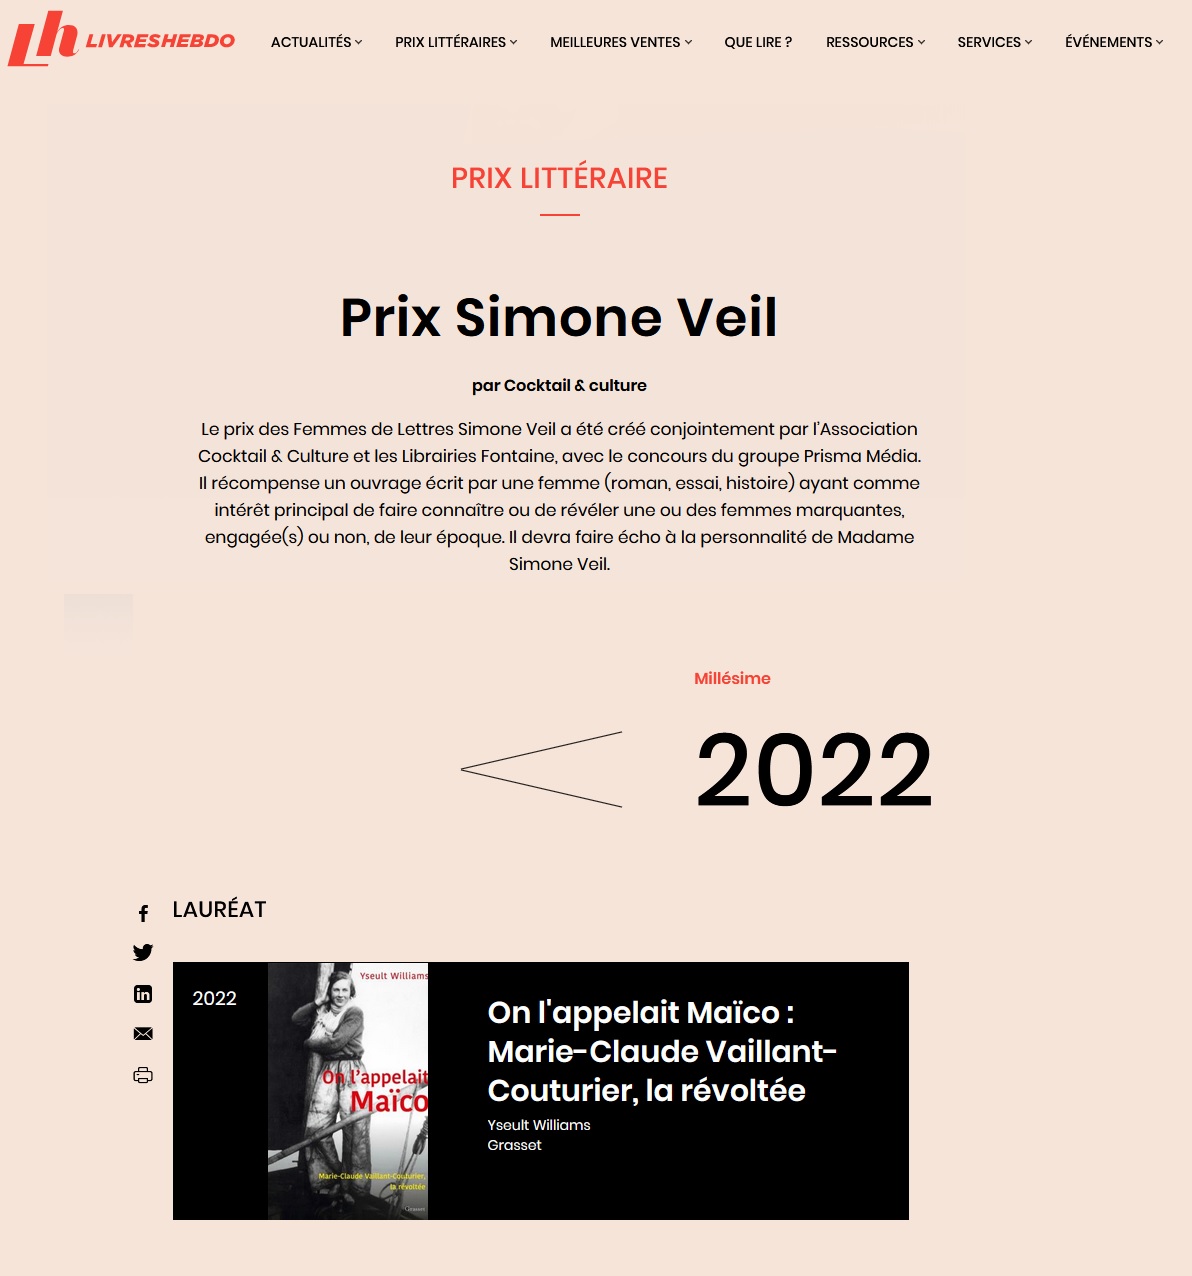 Livres Hebdo Prix Simone Veil 2022